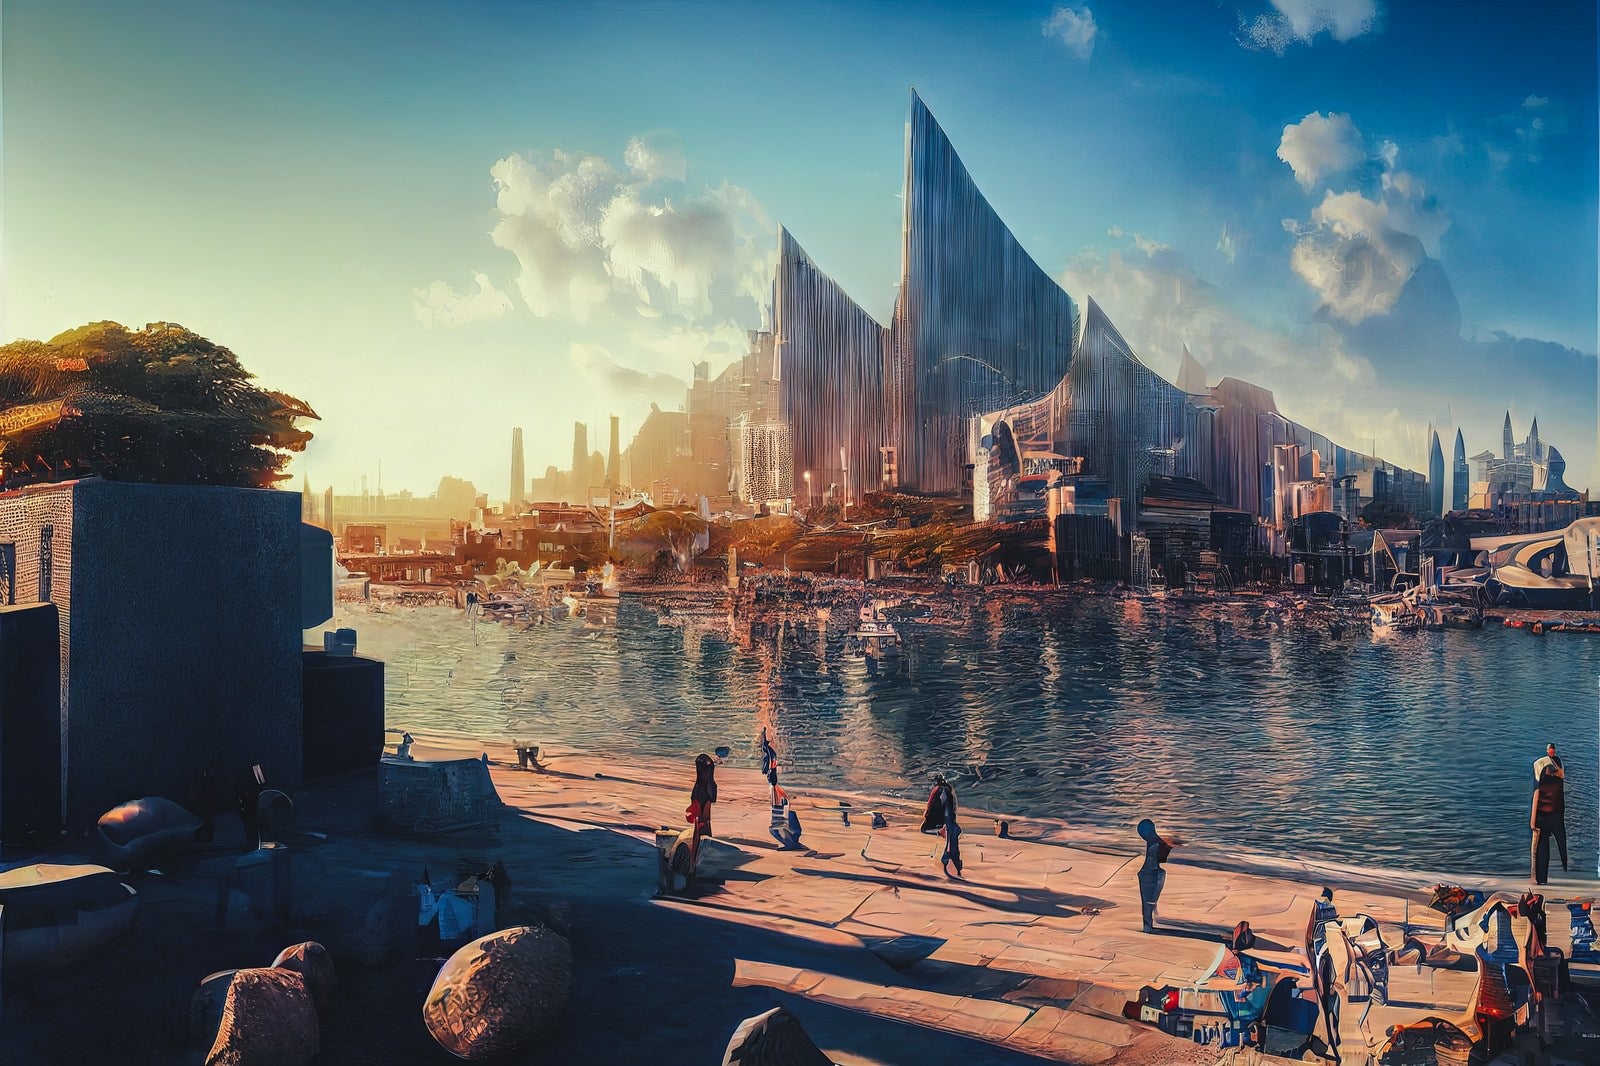 「川向うに見える未来都市」の写真